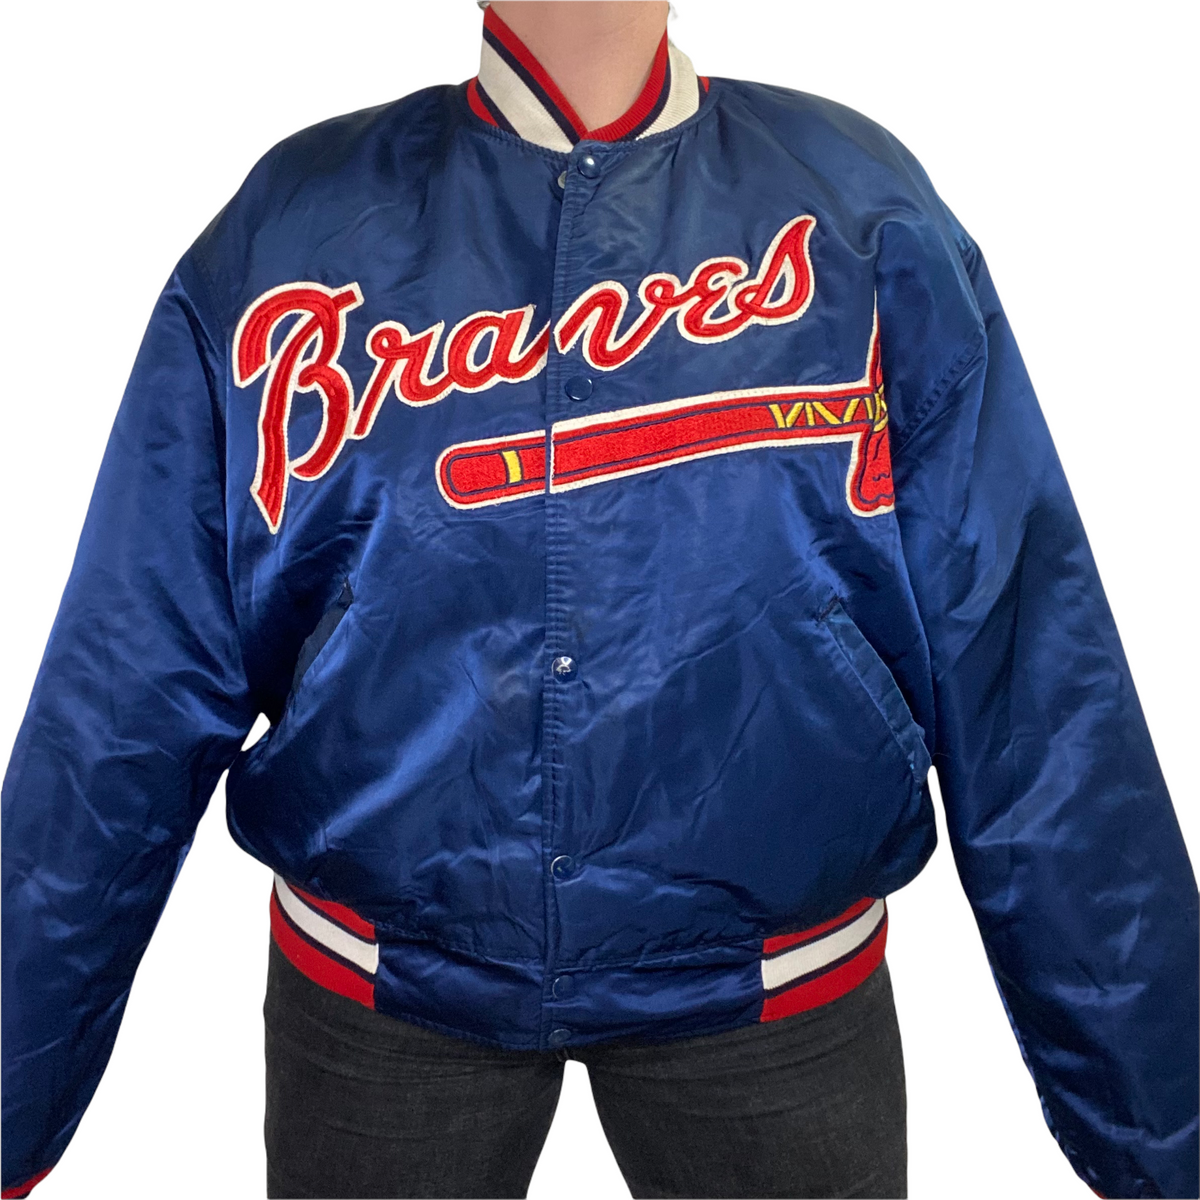 Atlanta Braves Shirt Men Large Adult Blue MLB Baseball Vintage 90s  Turtleneck